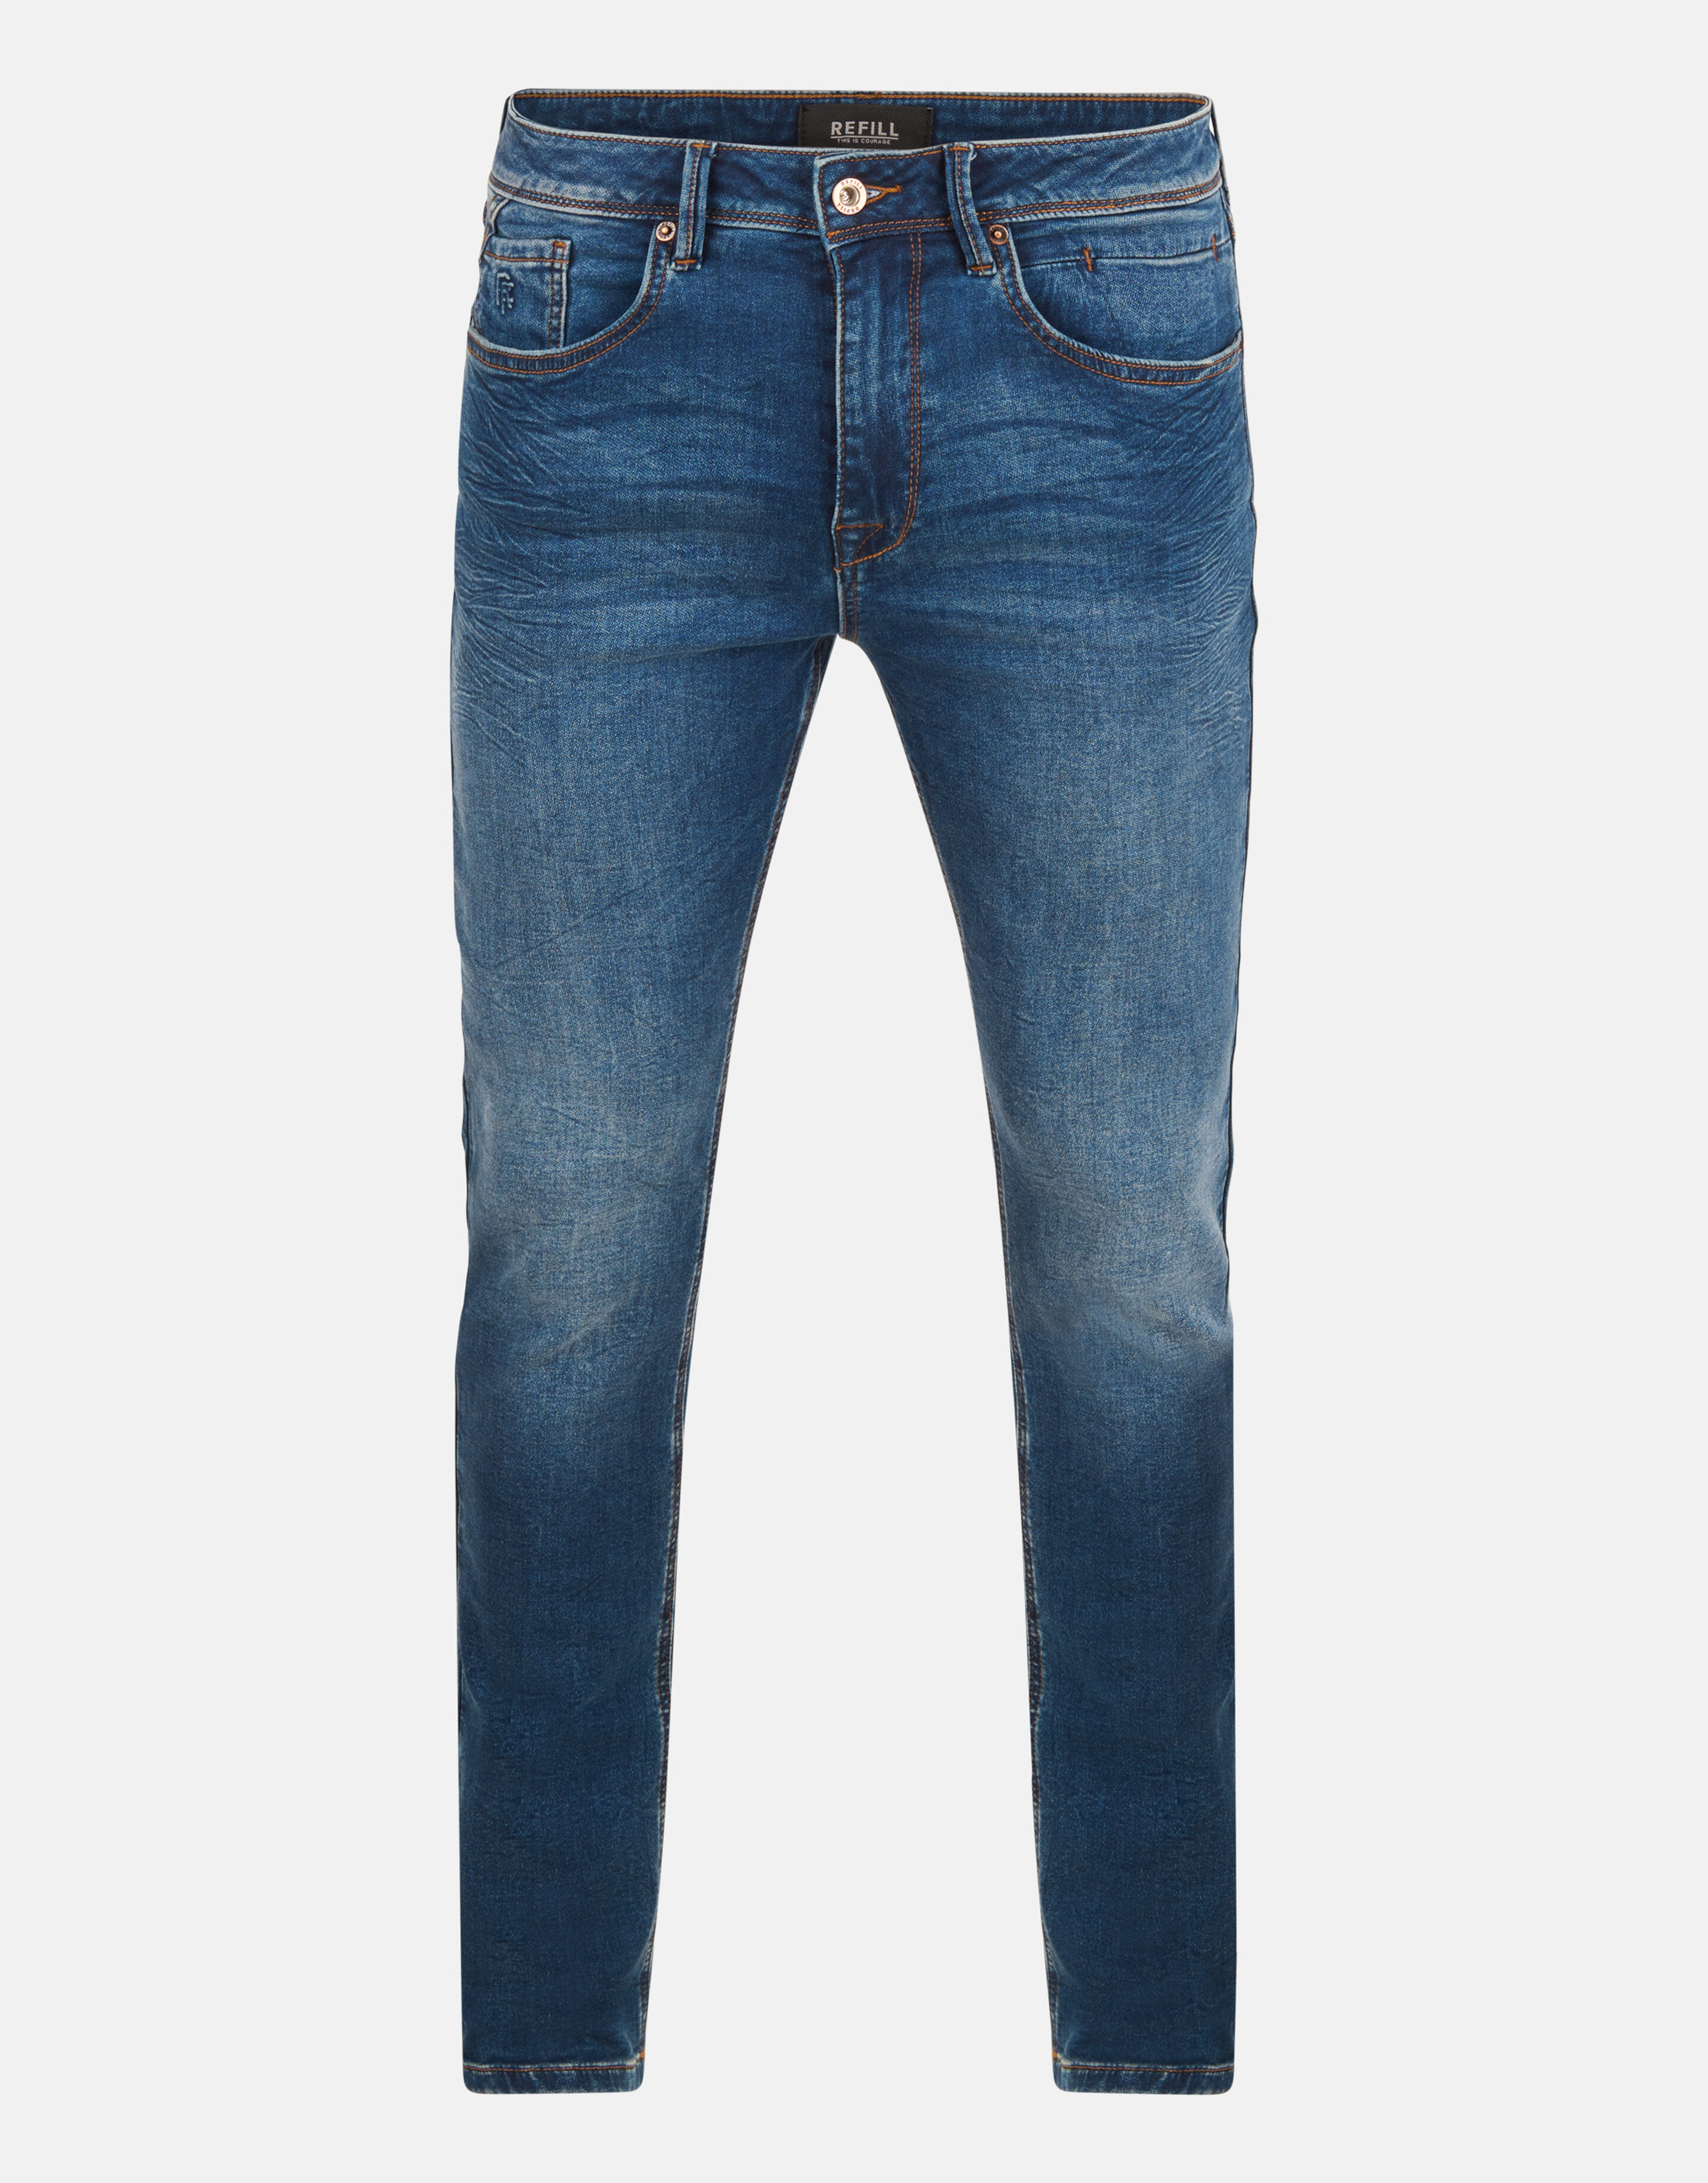 Slim Fit Jog Jeans Donkerblauw L34 Refill